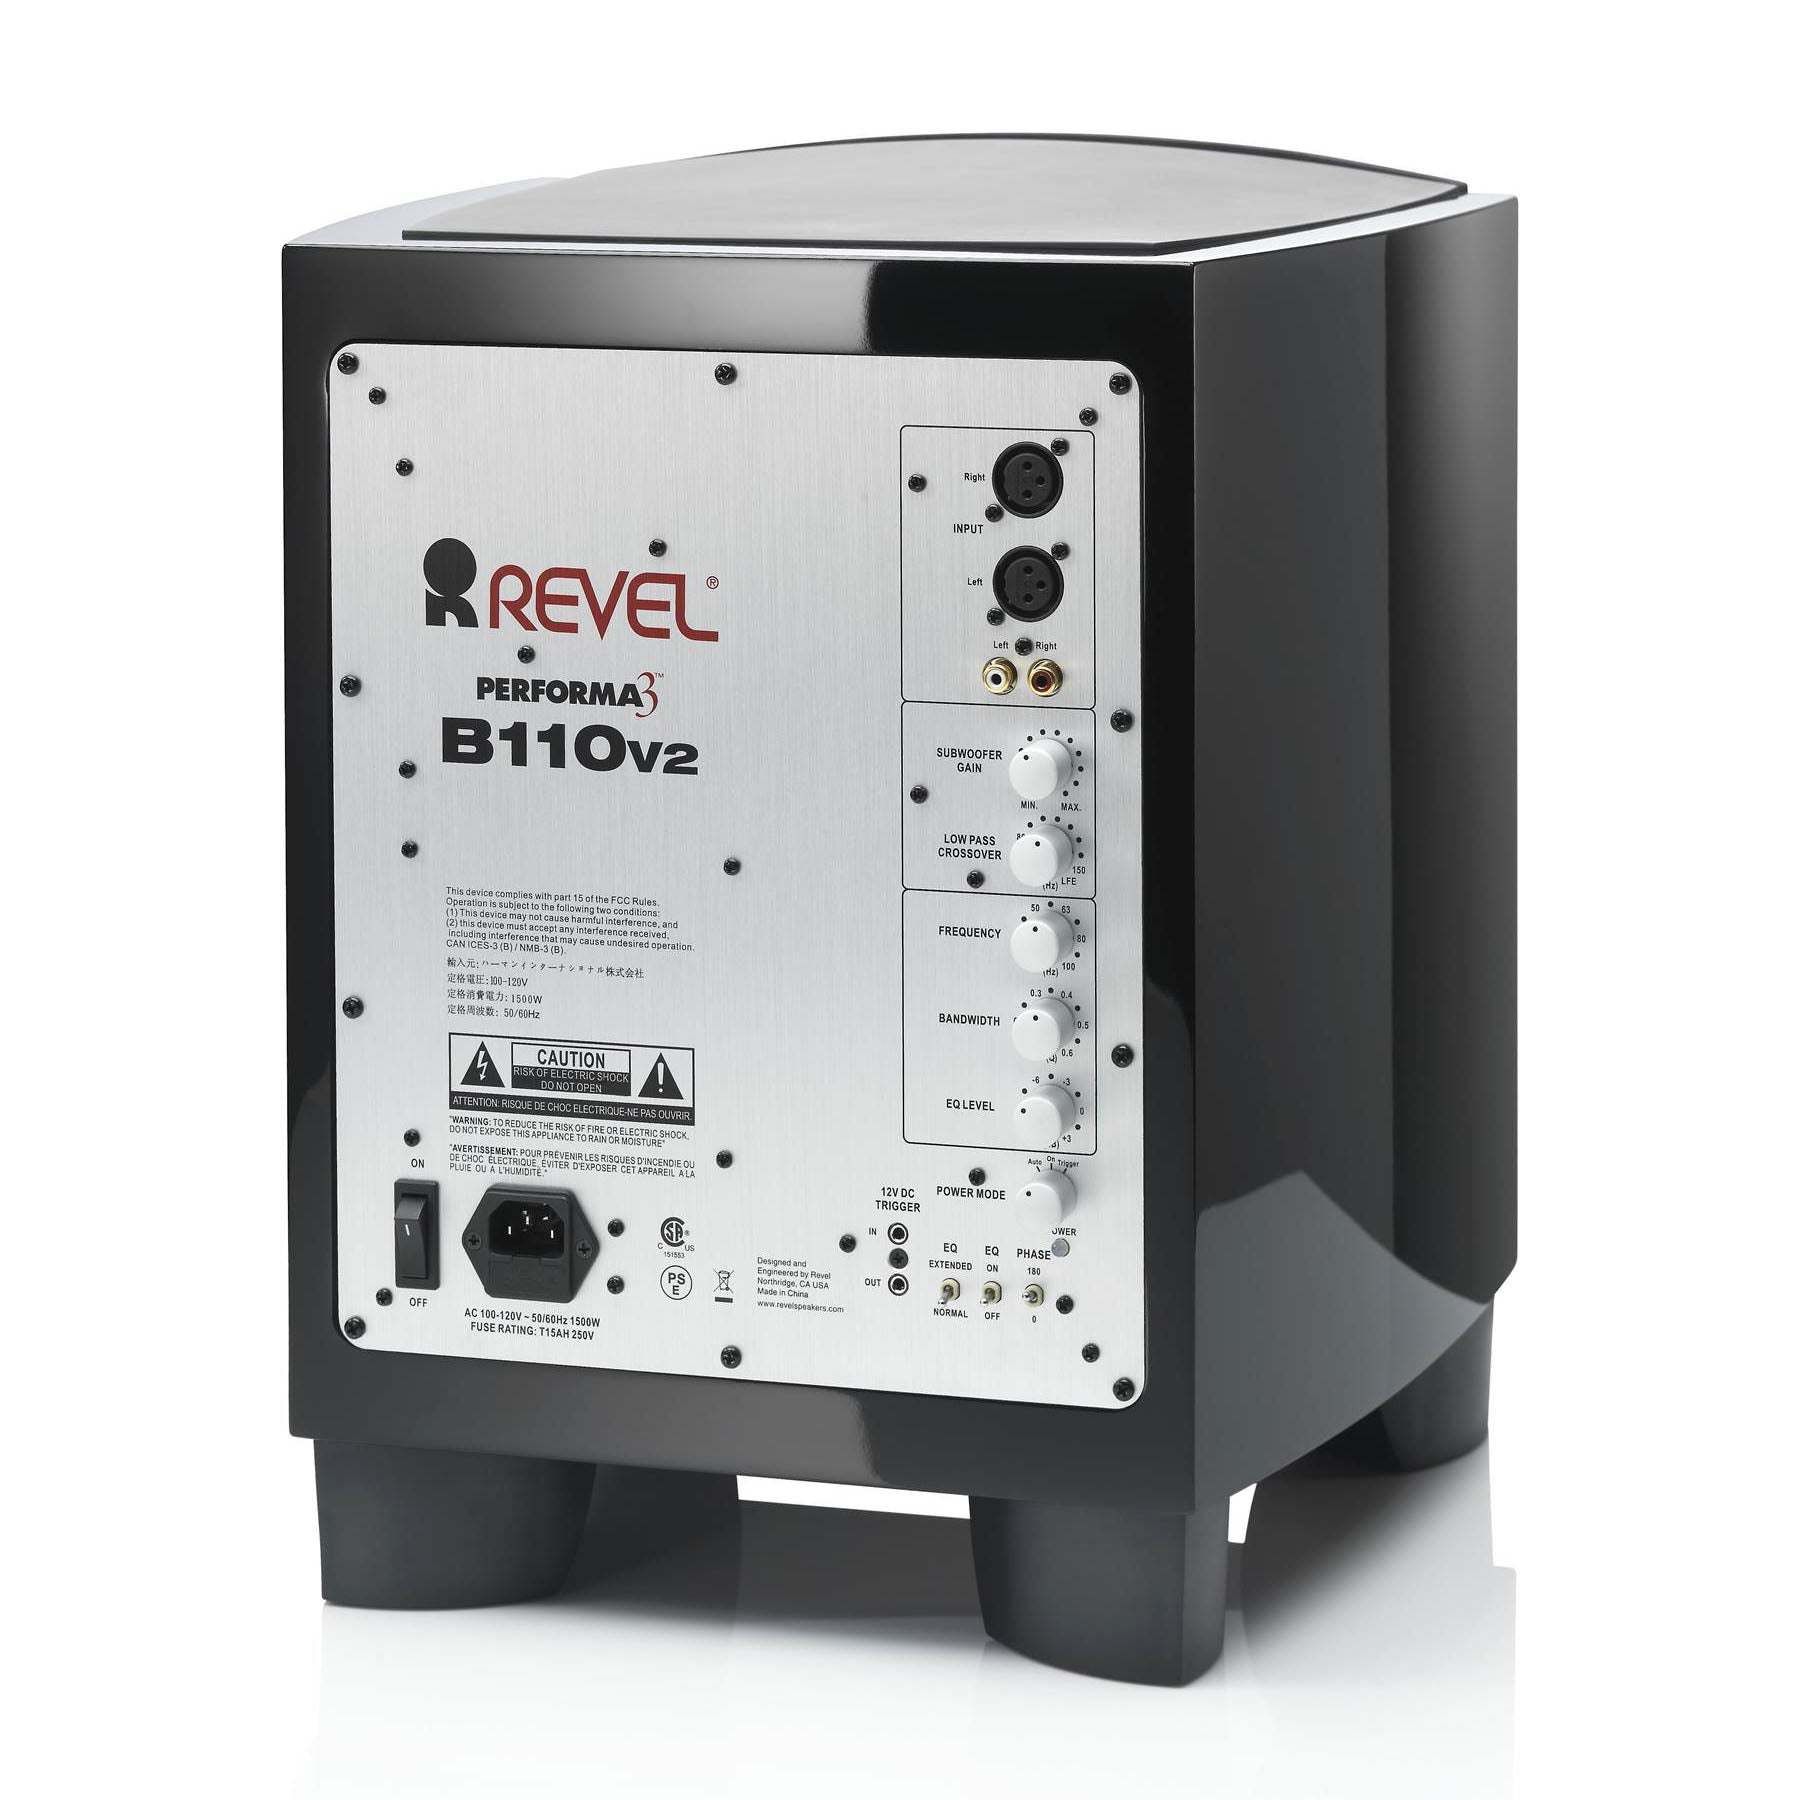 Revel B110v2 10” 1000W Powered Subwoofer